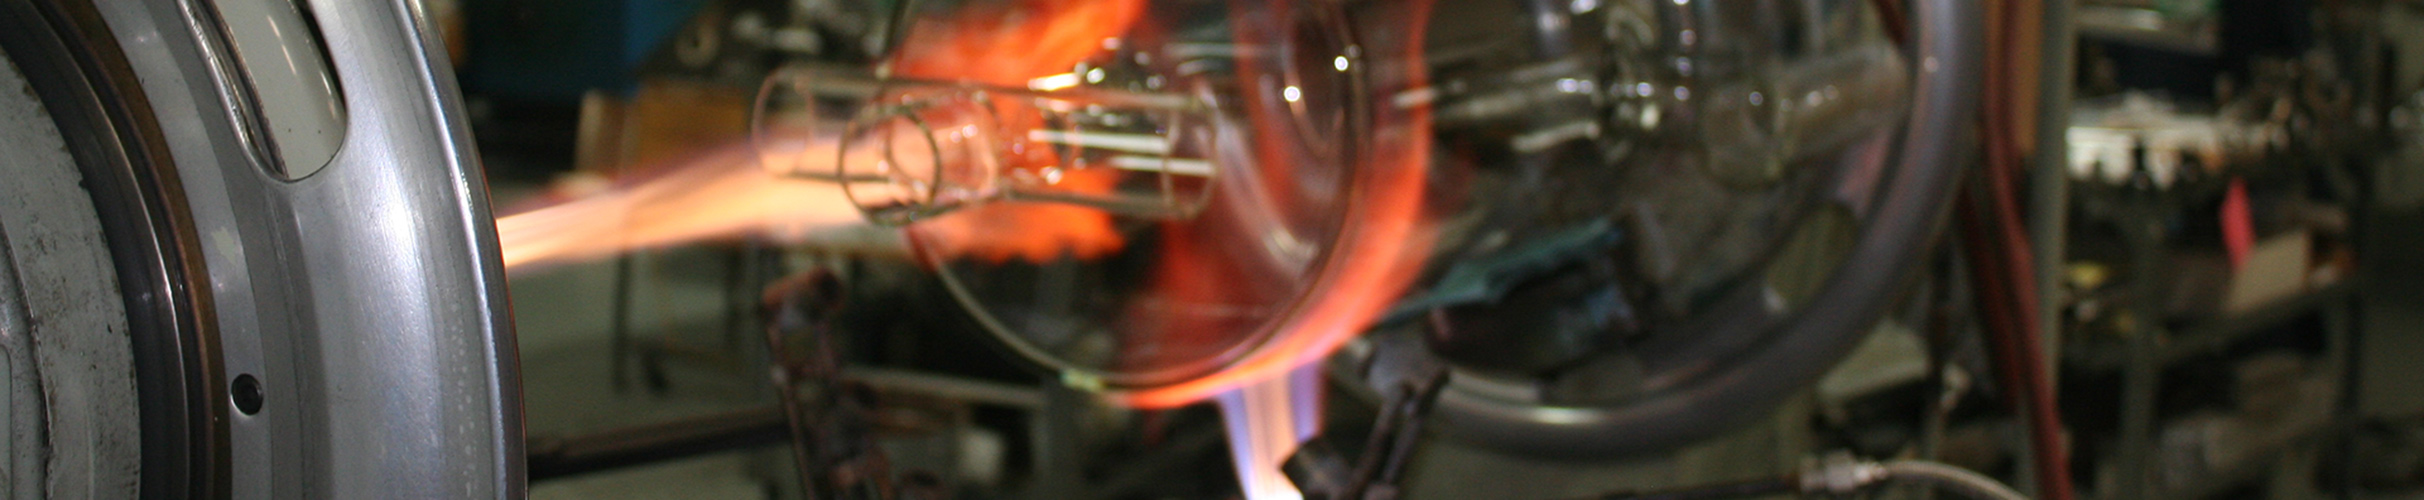 Custom Scientific Glassware Creation